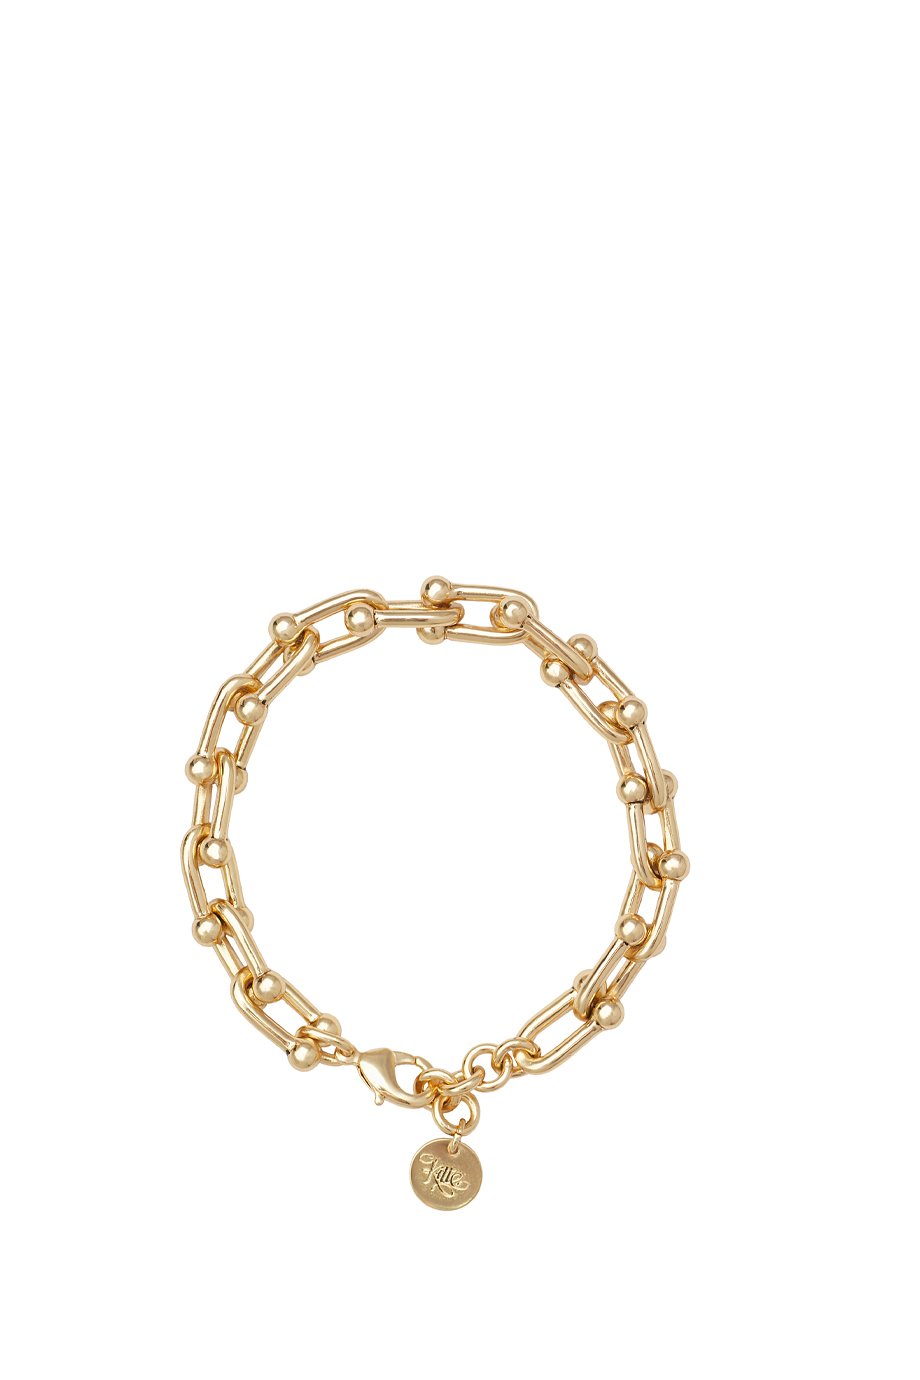 Kitte Bond Bracelet - Gold